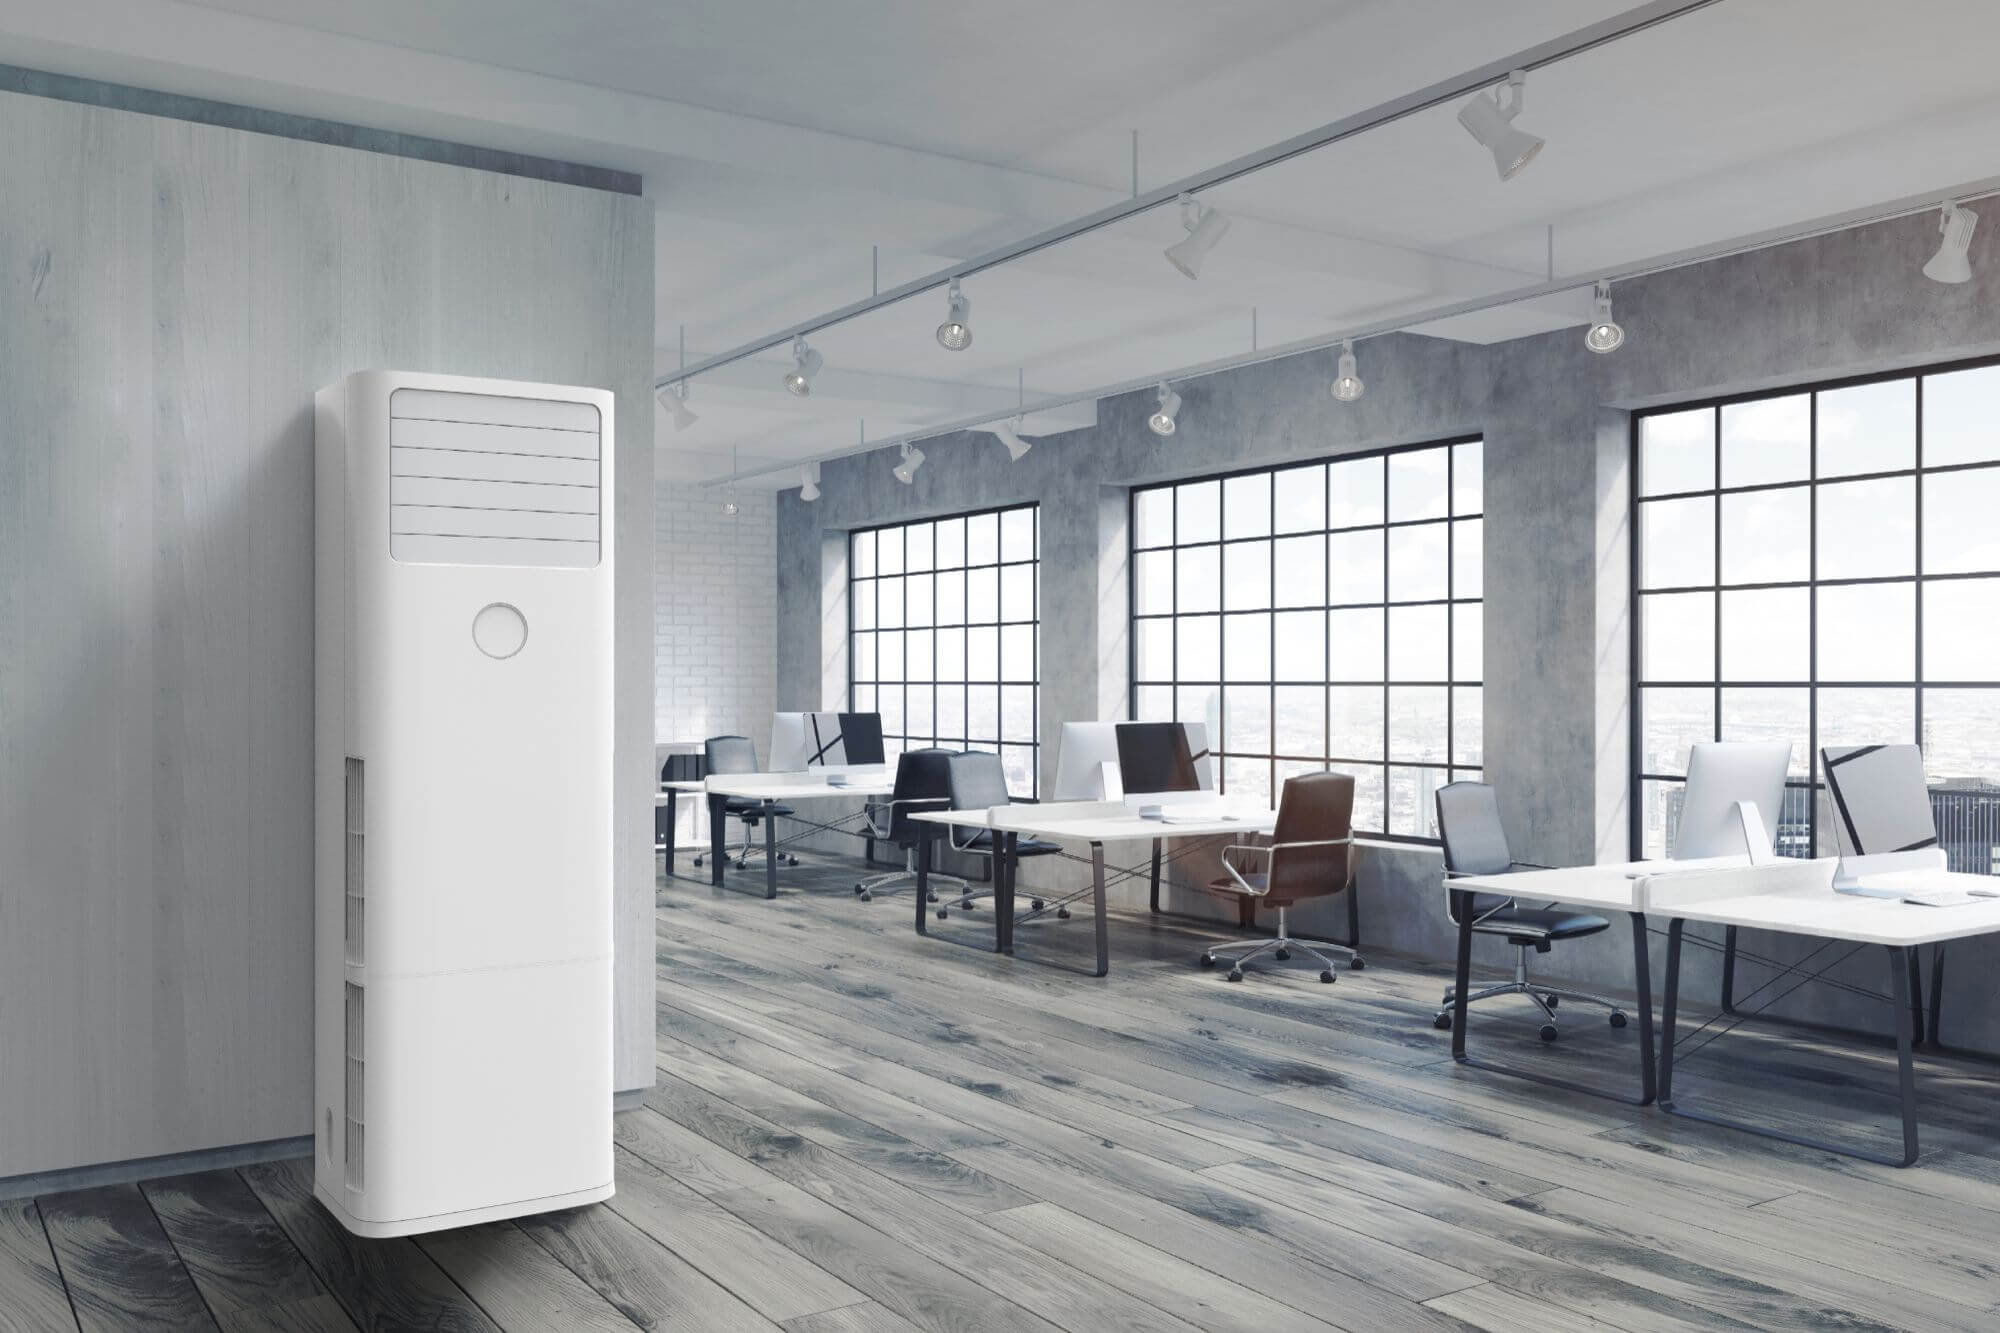 Klimaanlage an einer Wand montiert in modernen Büroräumen